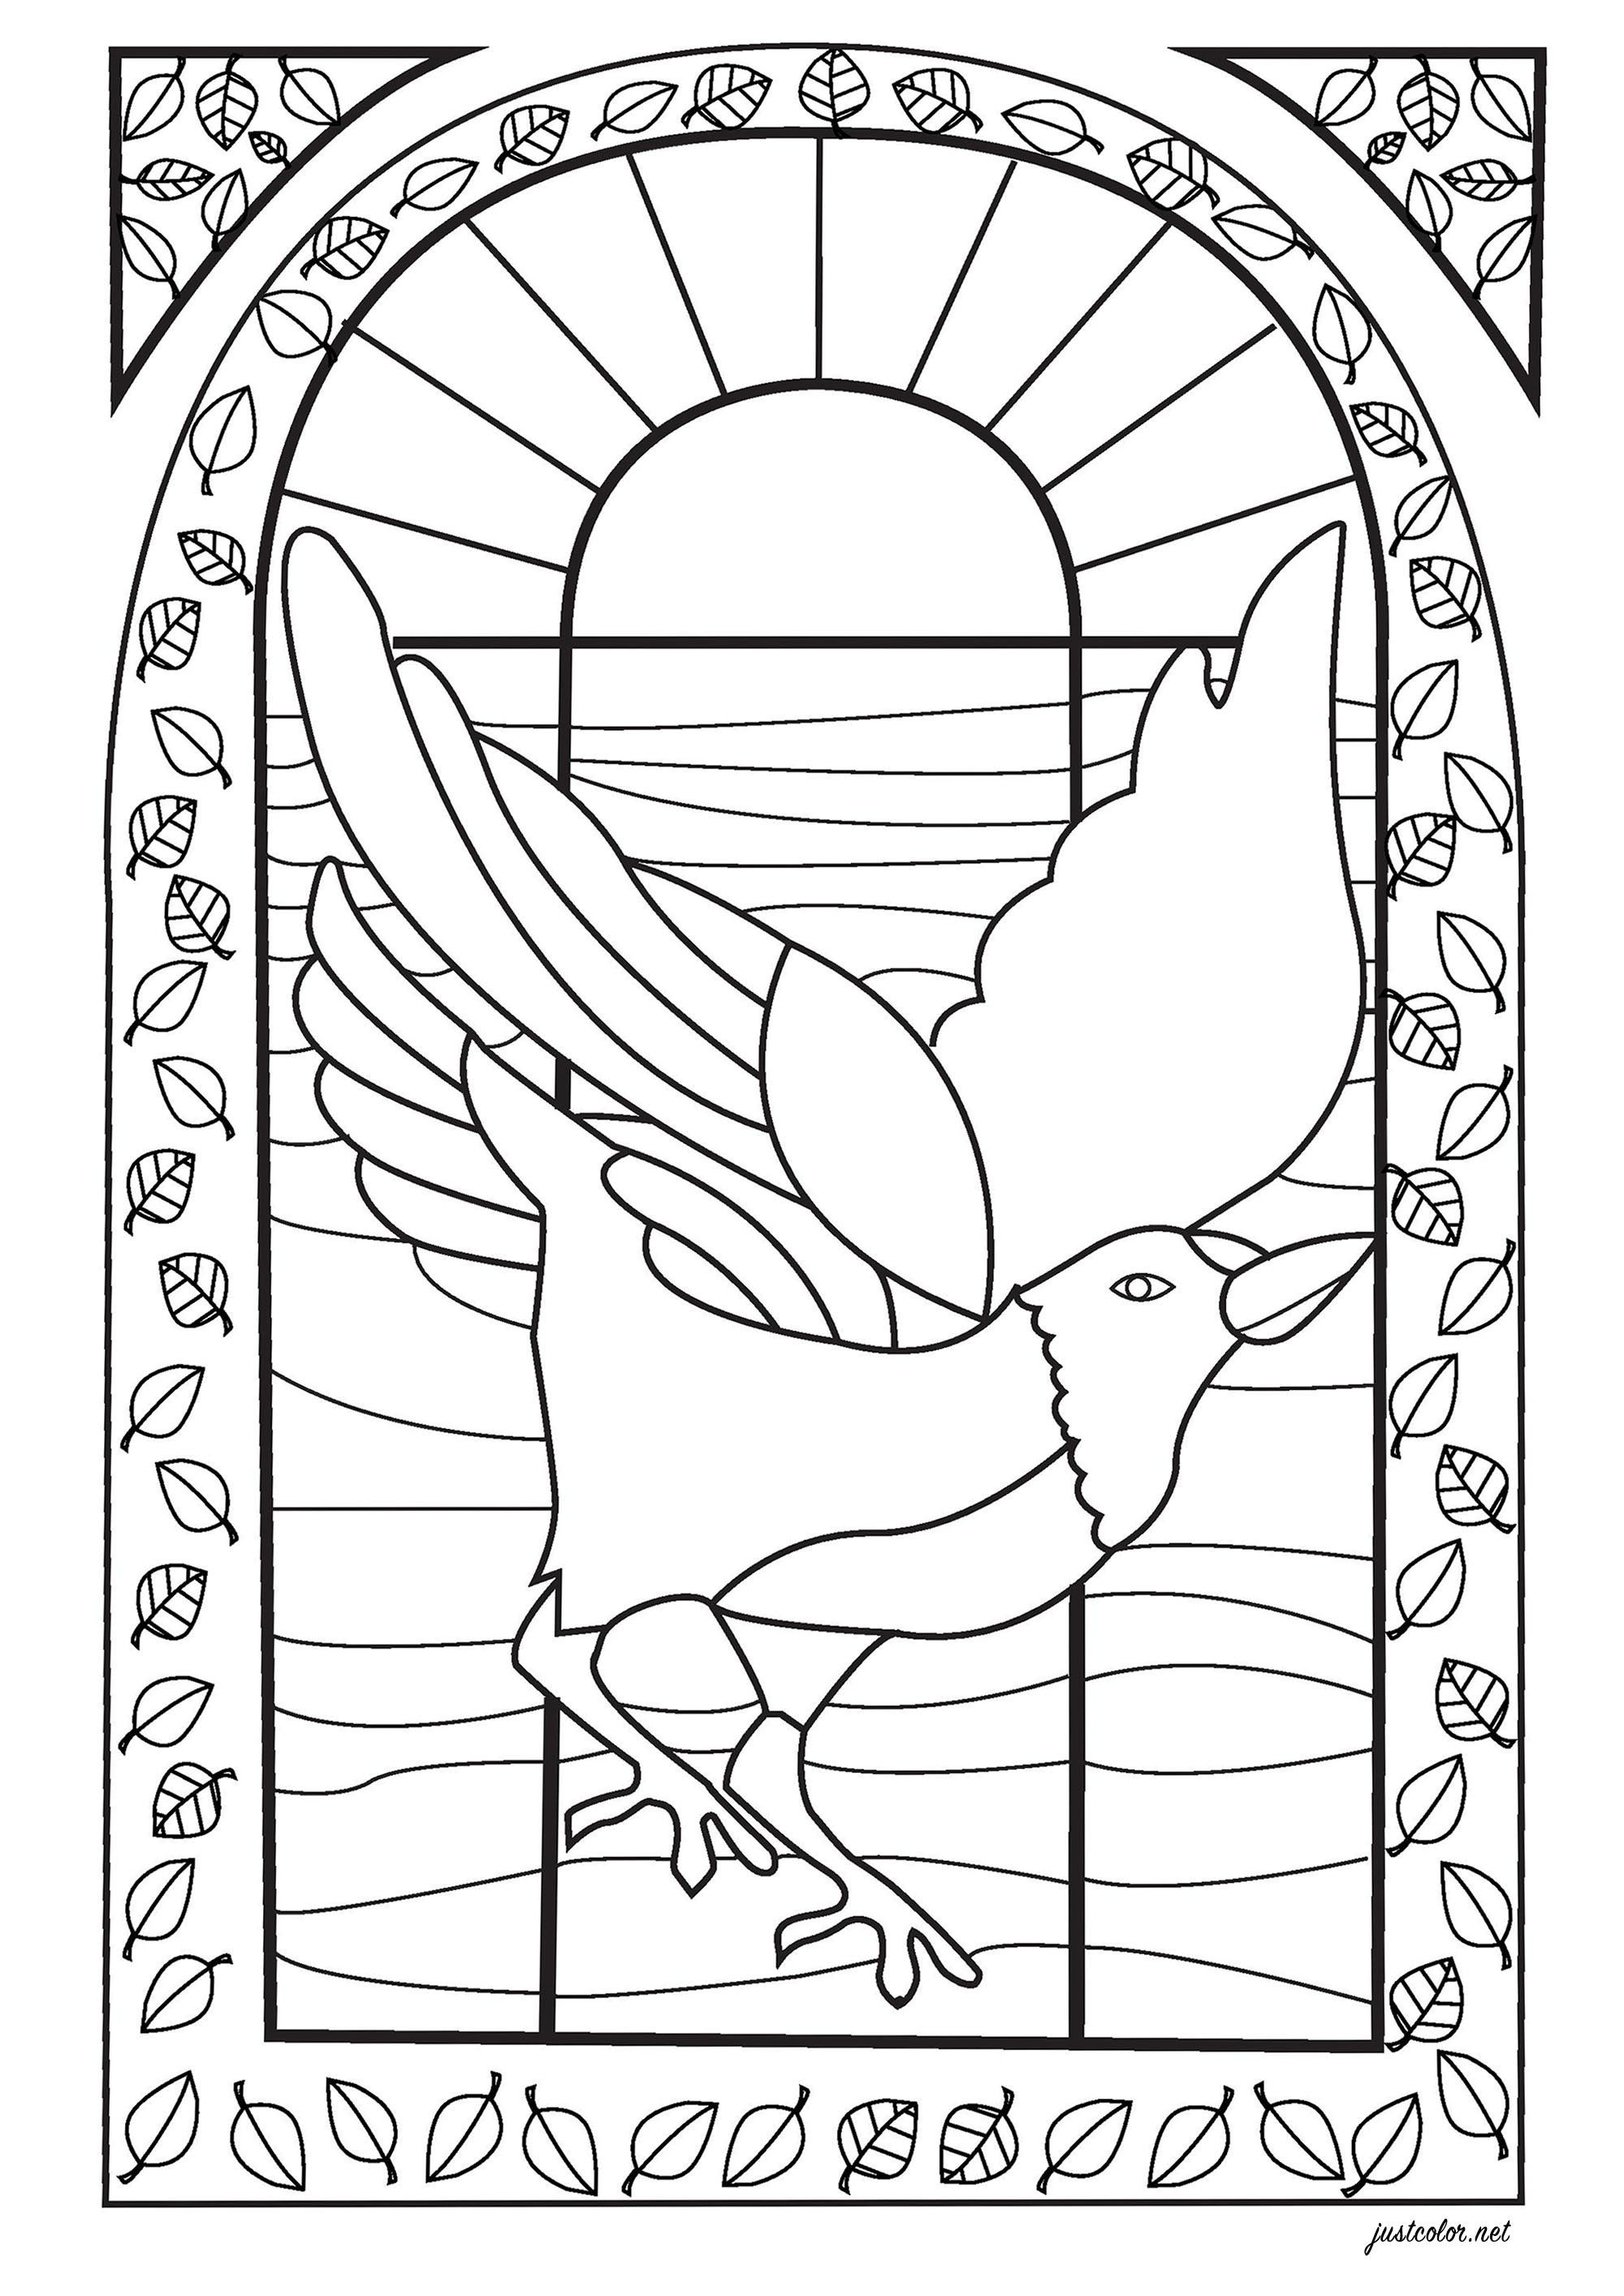 Disegno di un uccello da colorare, disegnato sullo stile di una vetrata